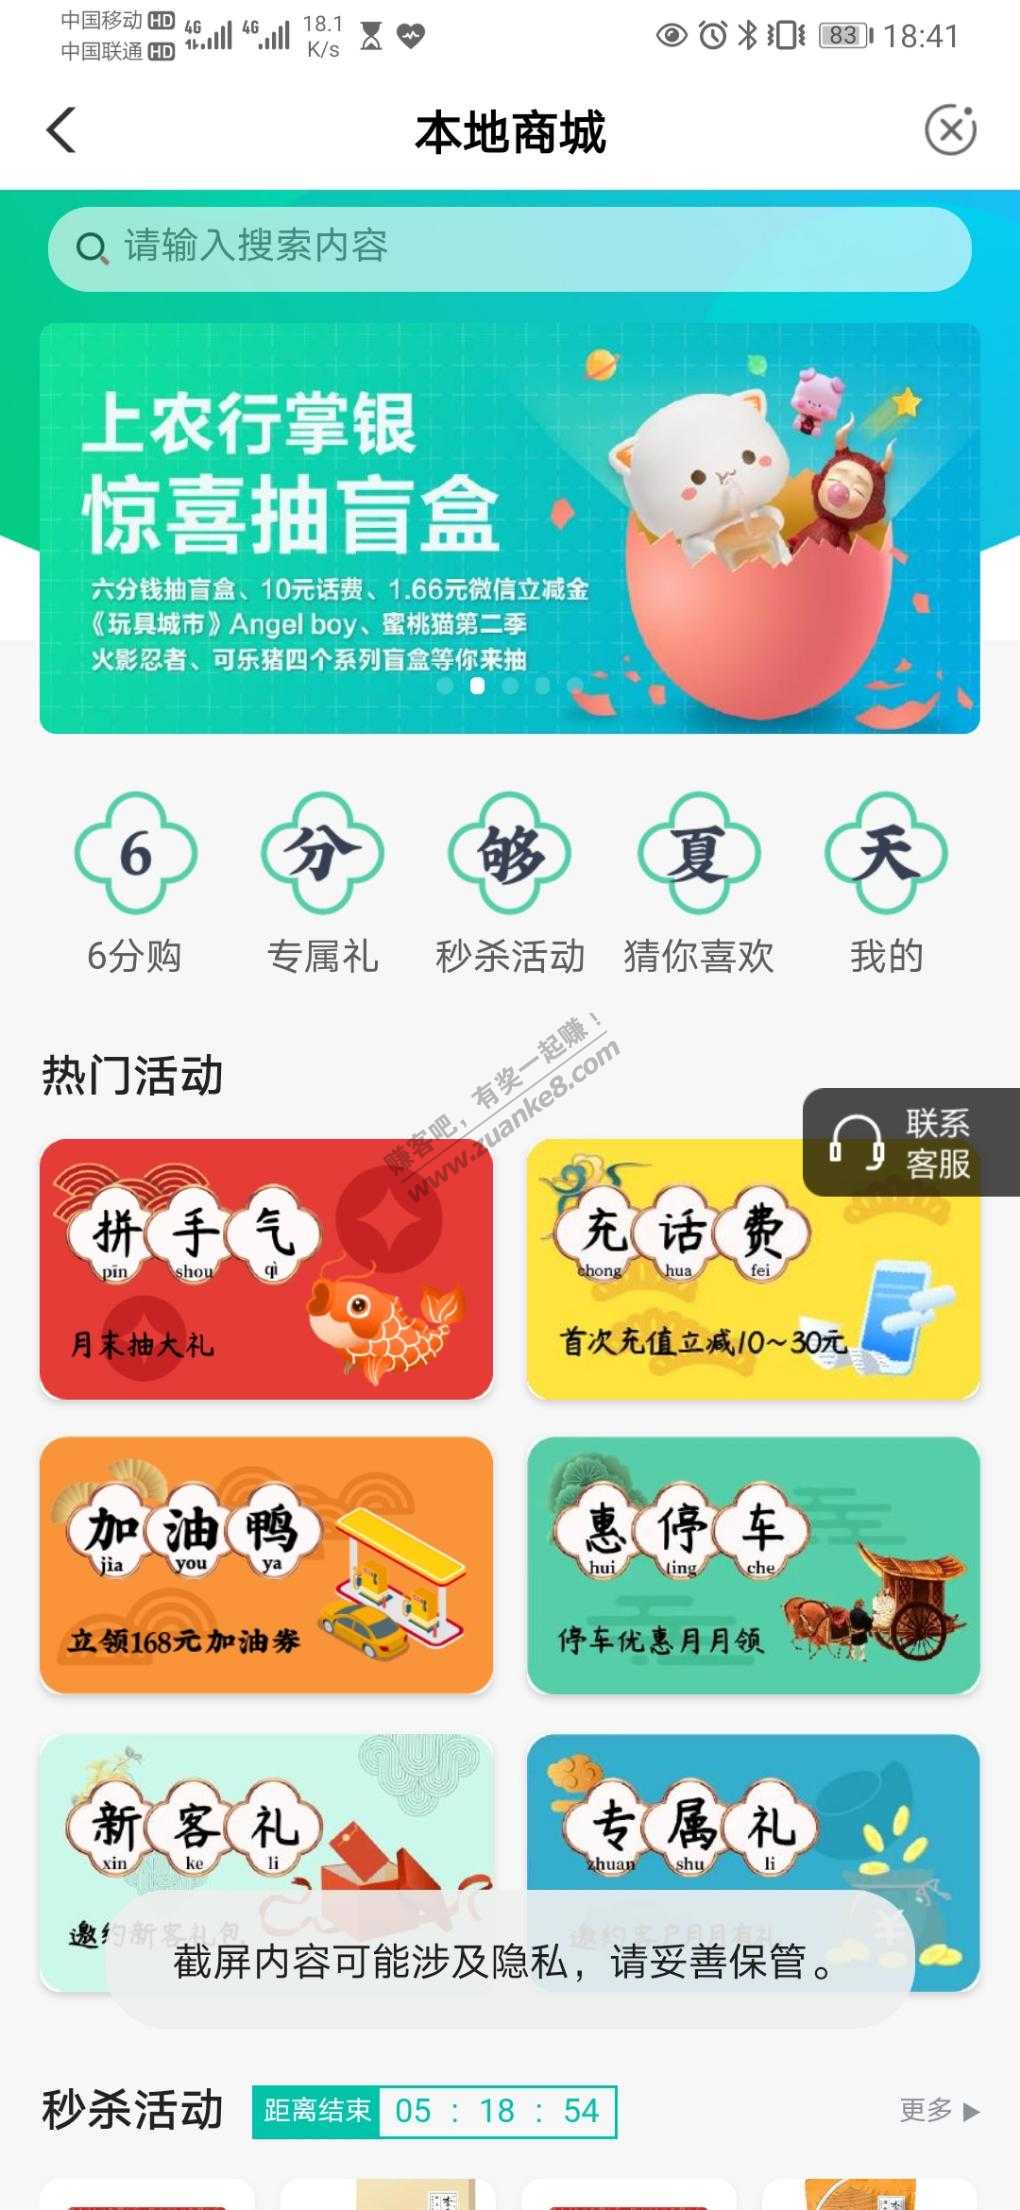 深圳农行秒杀活动 5V.x立减金-惠小助(52huixz.com)